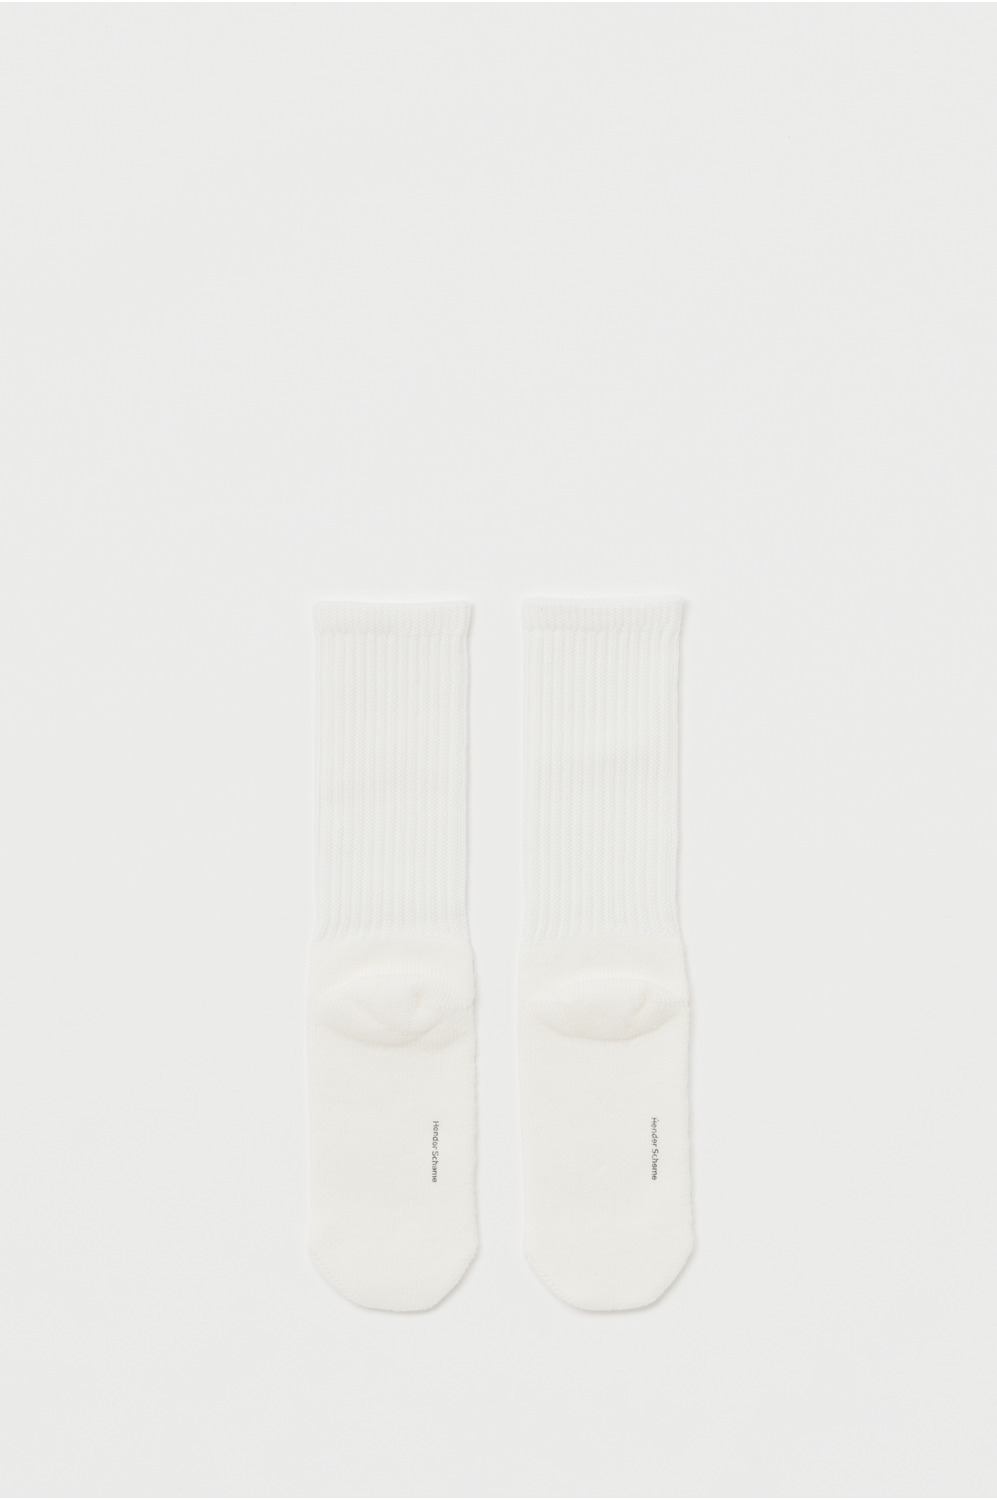 medallion socks 詳細画像 white 2